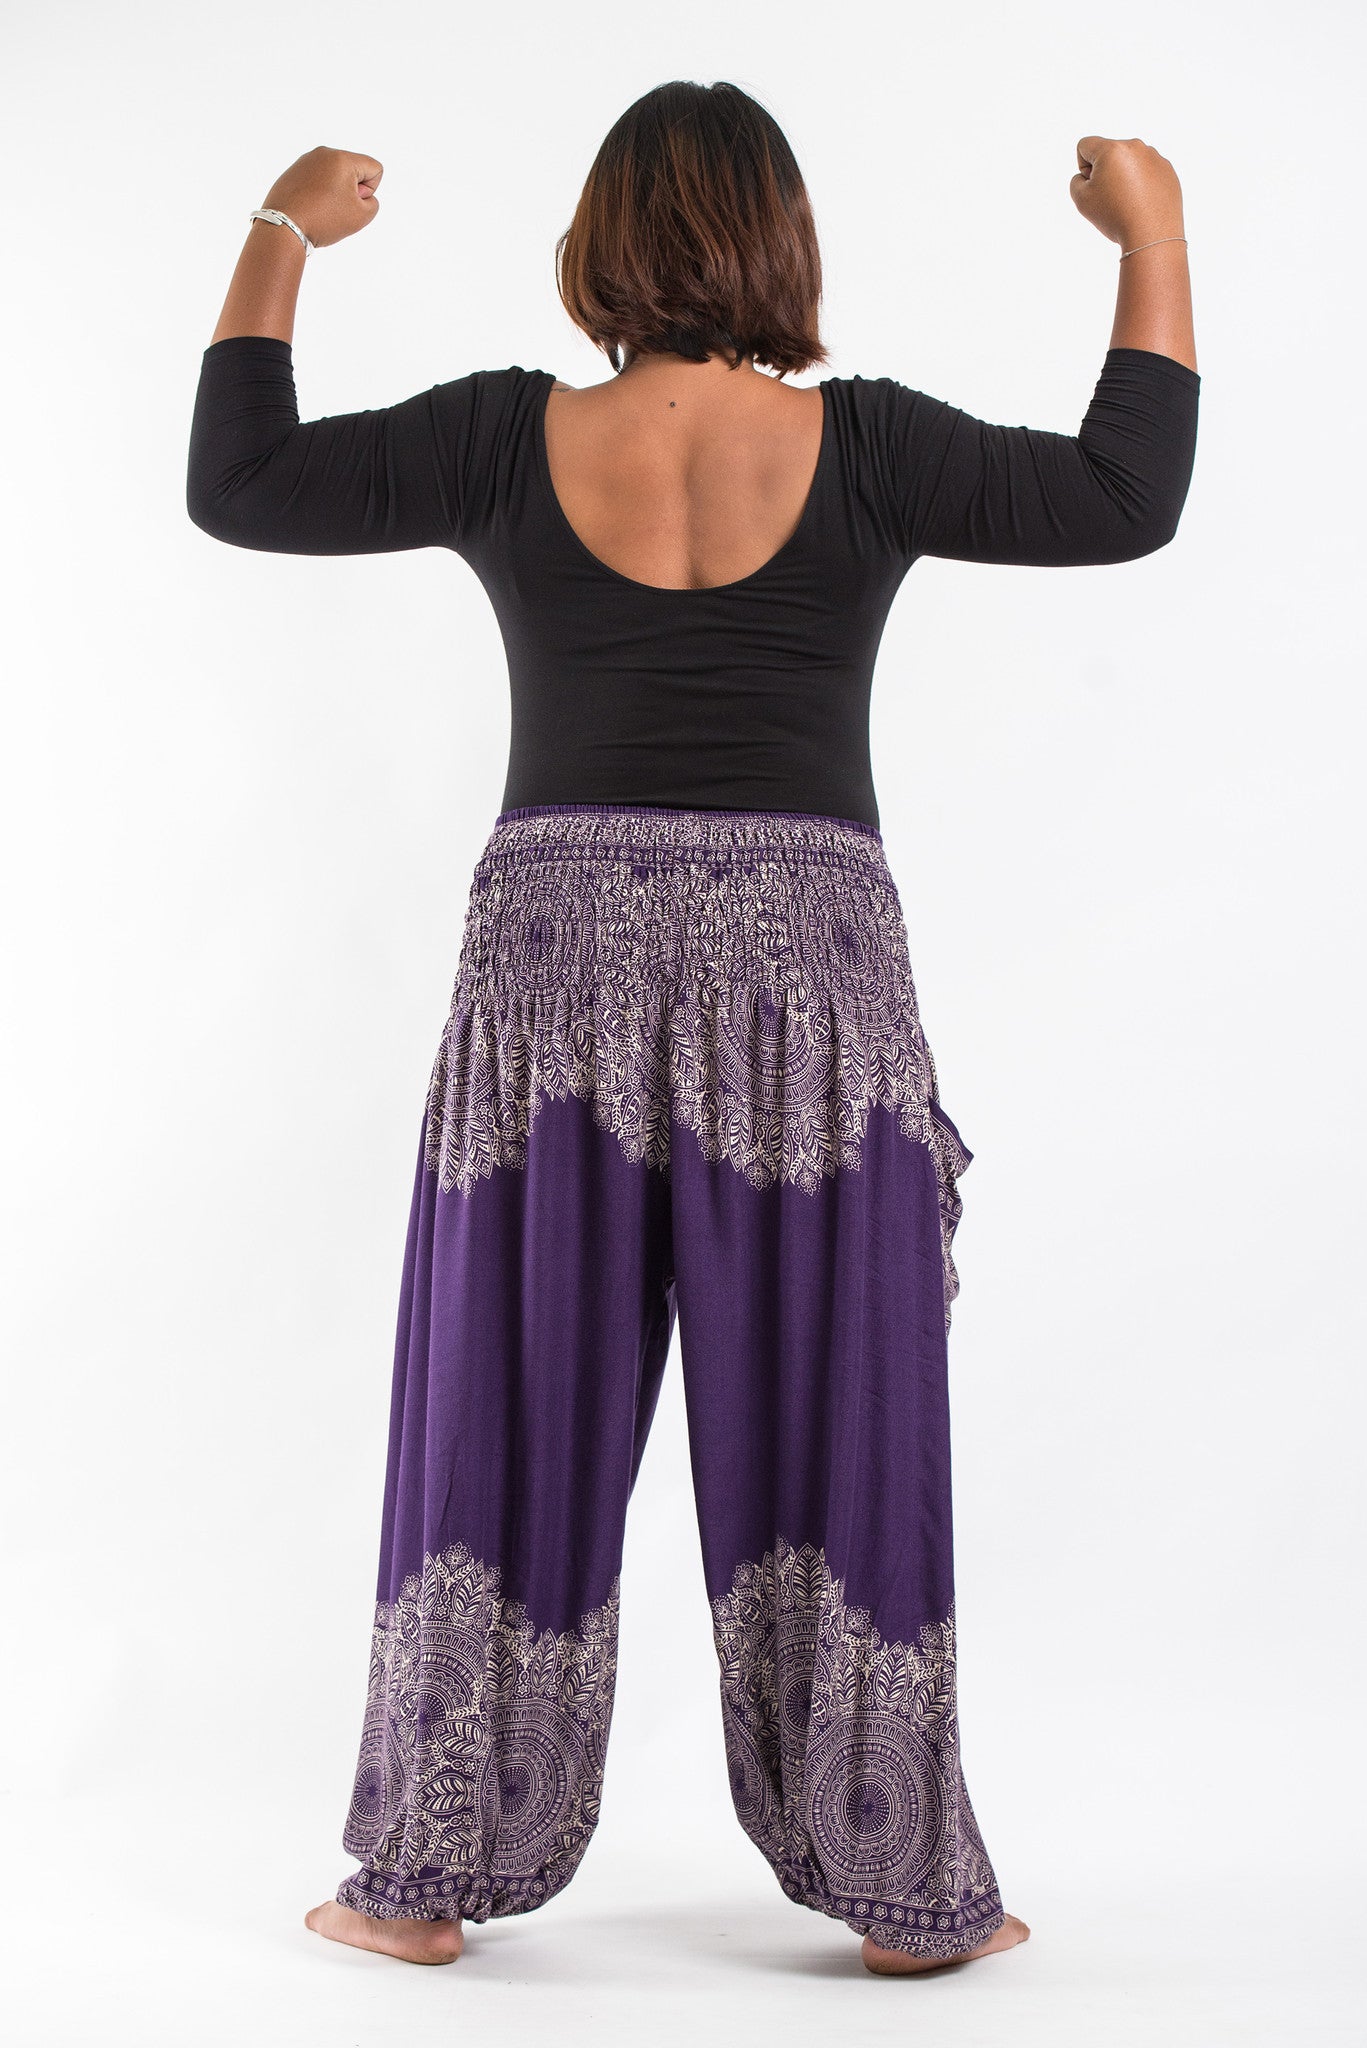 Plus Size Floral Mandalas Women's Harem Pants in Purple